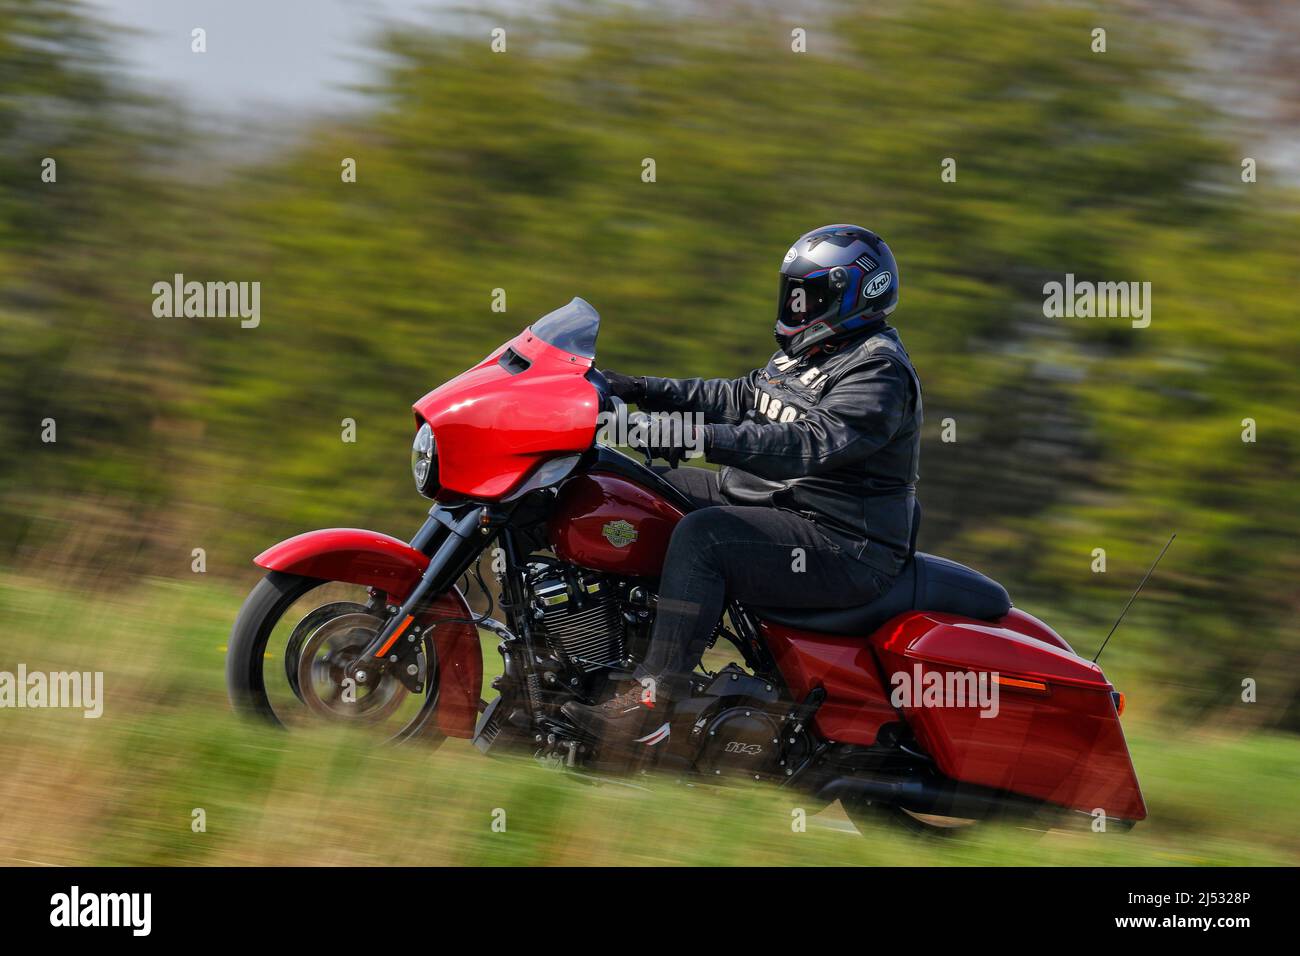 Un motociclista che guida una motocicletta Harley Davidson con motore 114 diretto a Squires Bikers Cafe a Sherburn in Elmet, North Yorkshire, UK Foto Stock